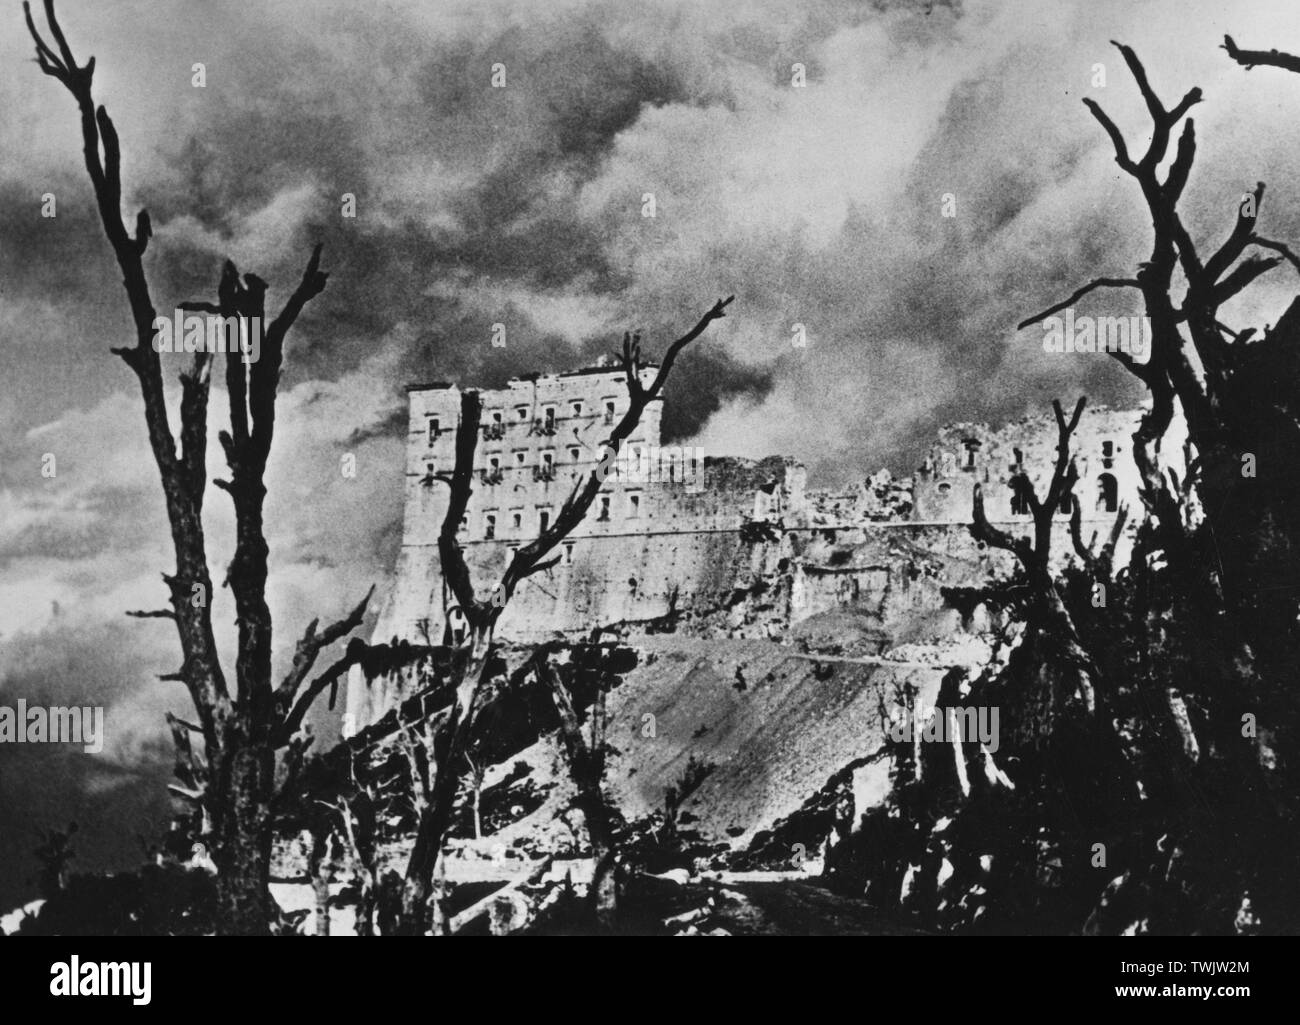 Italie, Latium, montecassino, l'abbaye détruite par les bombardements pendant la bataille de cassino de 1944 Banque D'Images